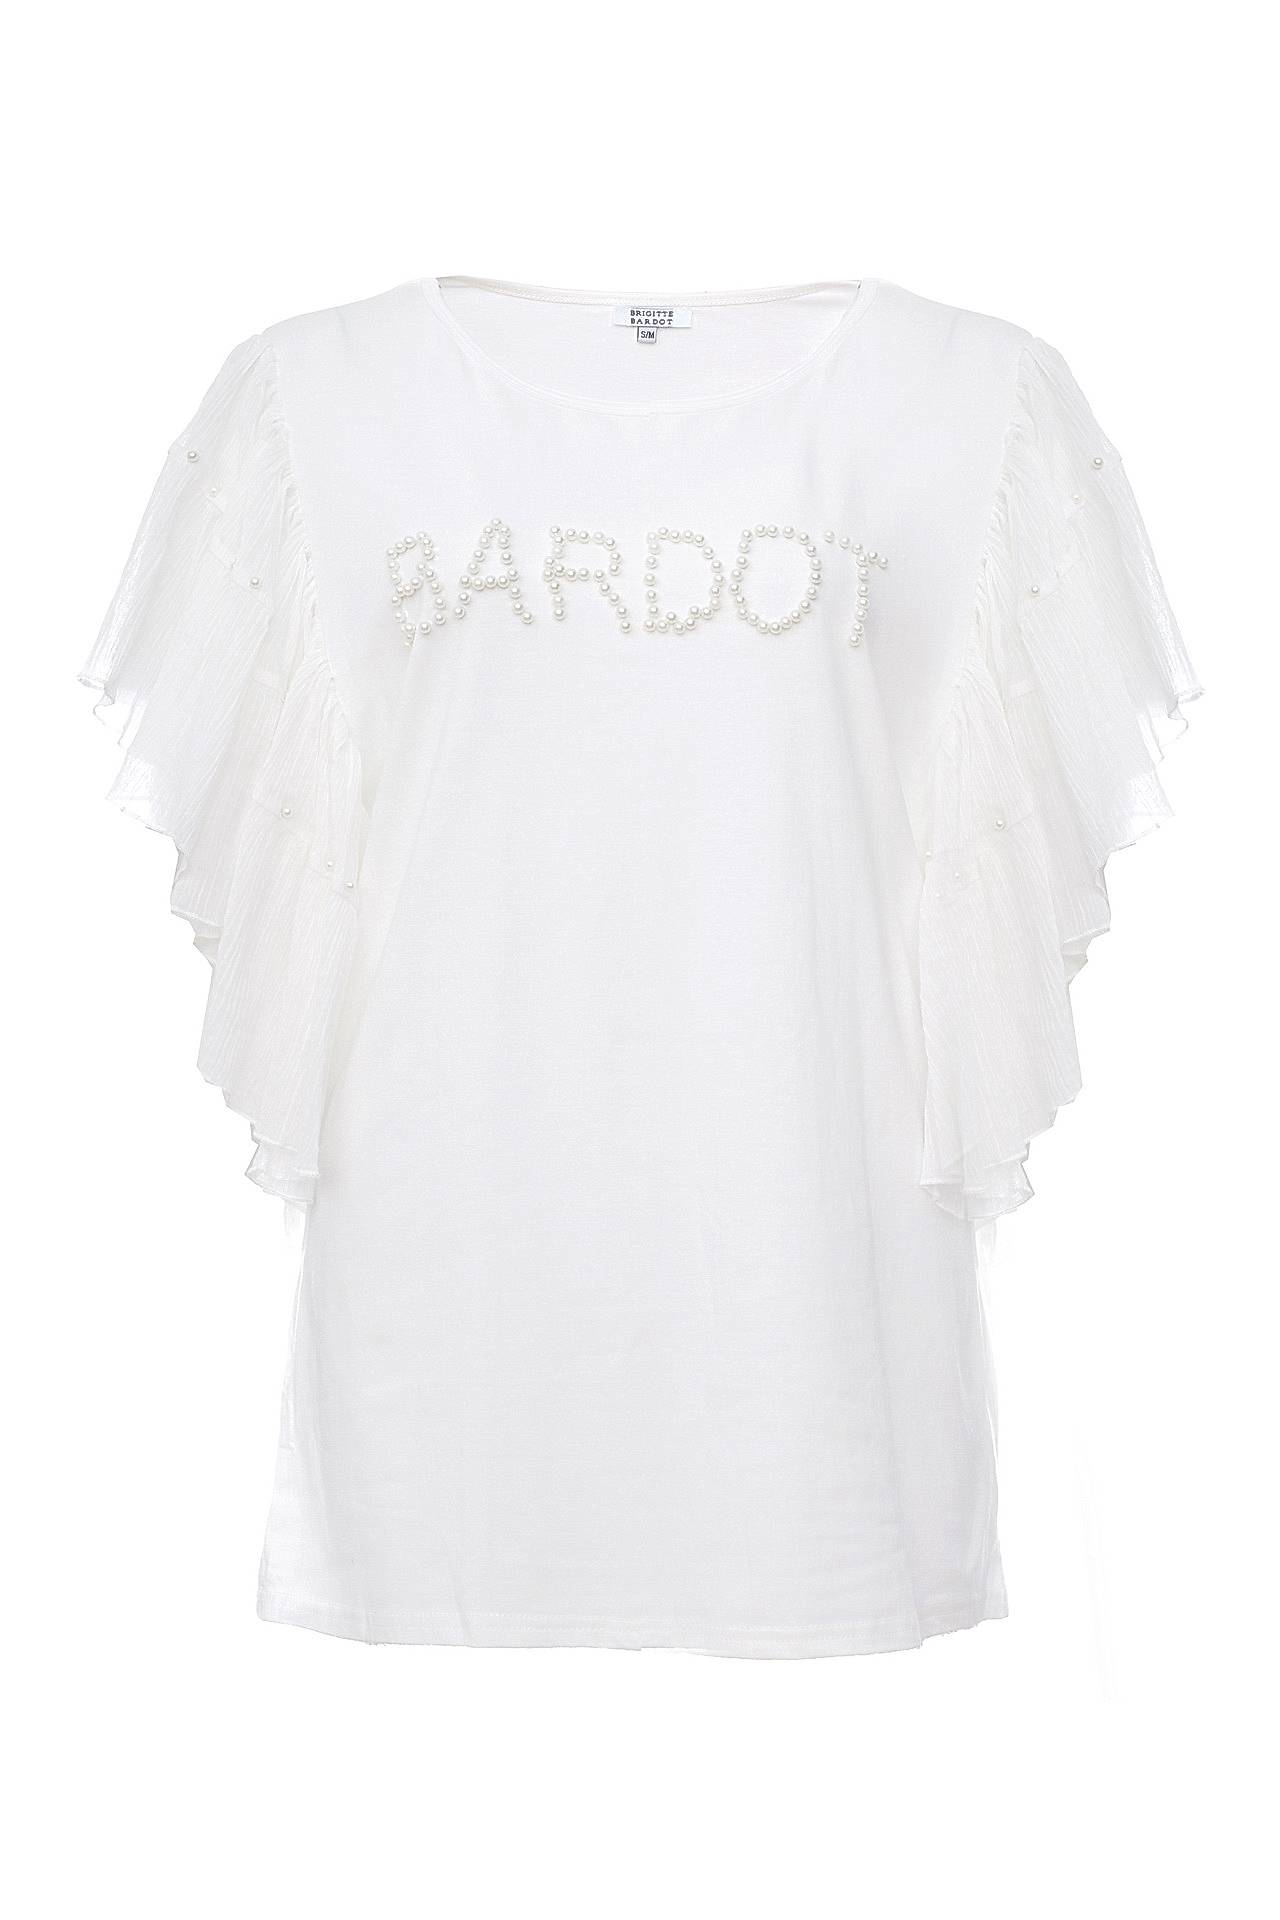 Одежда женская Блузка BRIGITTE BARDOT (BB48016/16.2). Купить за 3540 руб.